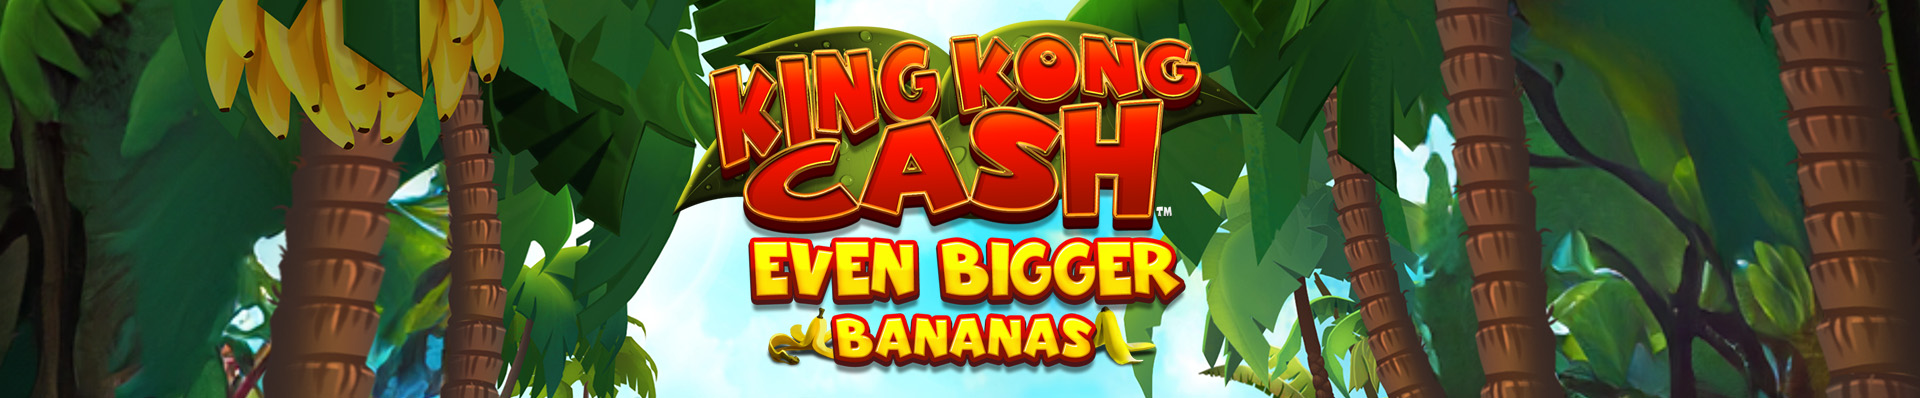 King Kong Cash Even Bigger Bananas Slot